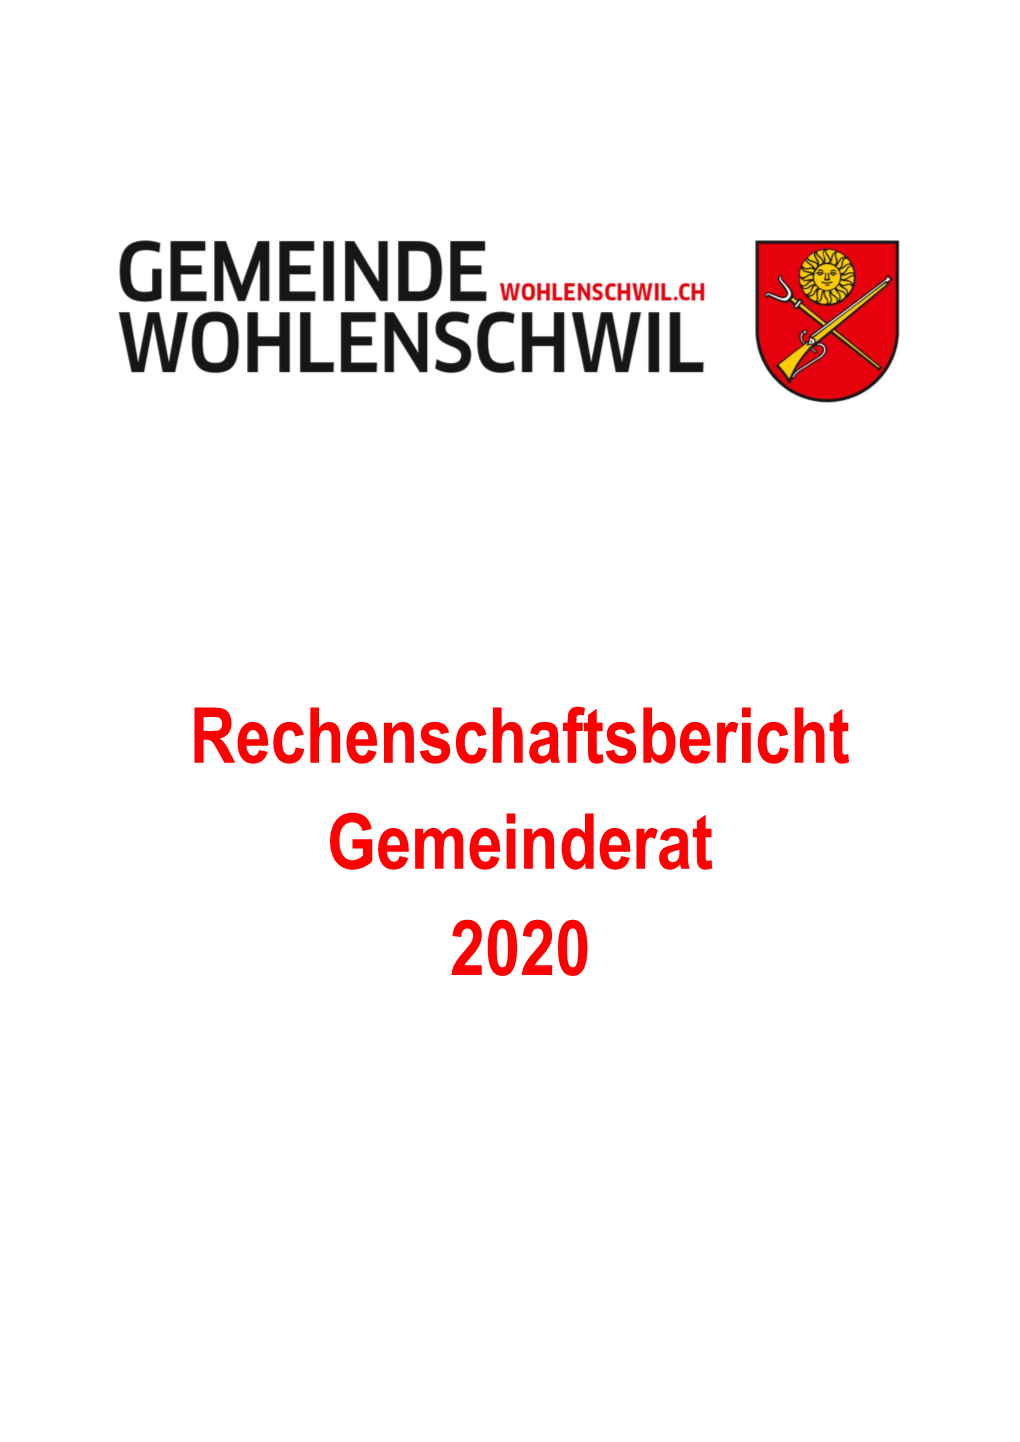 Rechenschaftsbericht Gemeinderat 2020